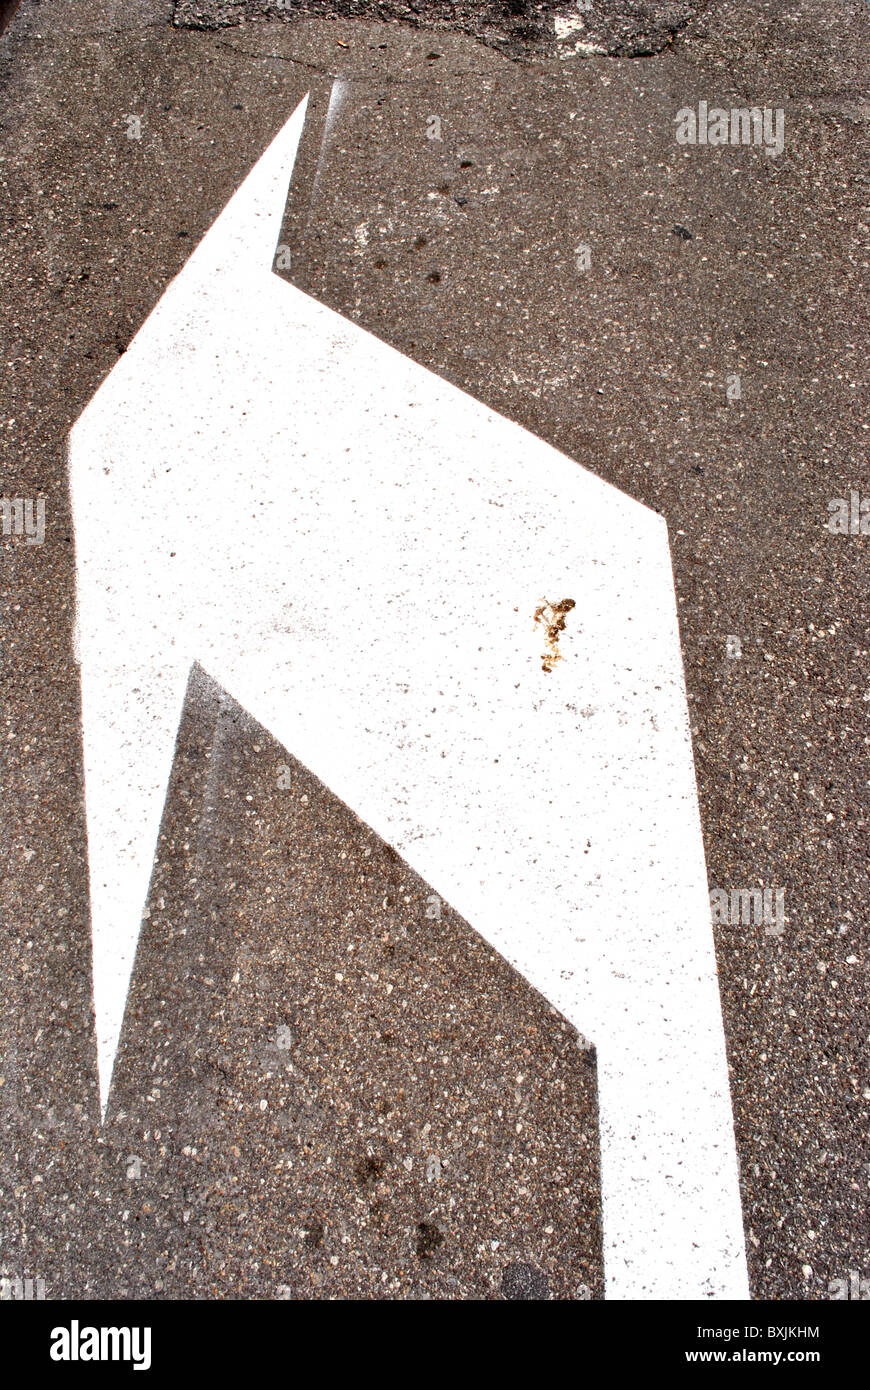 gedruckt auf dem Asphalt Verkehrszeichen an, mit einem Pfeil nach links abbiegen Stockfoto